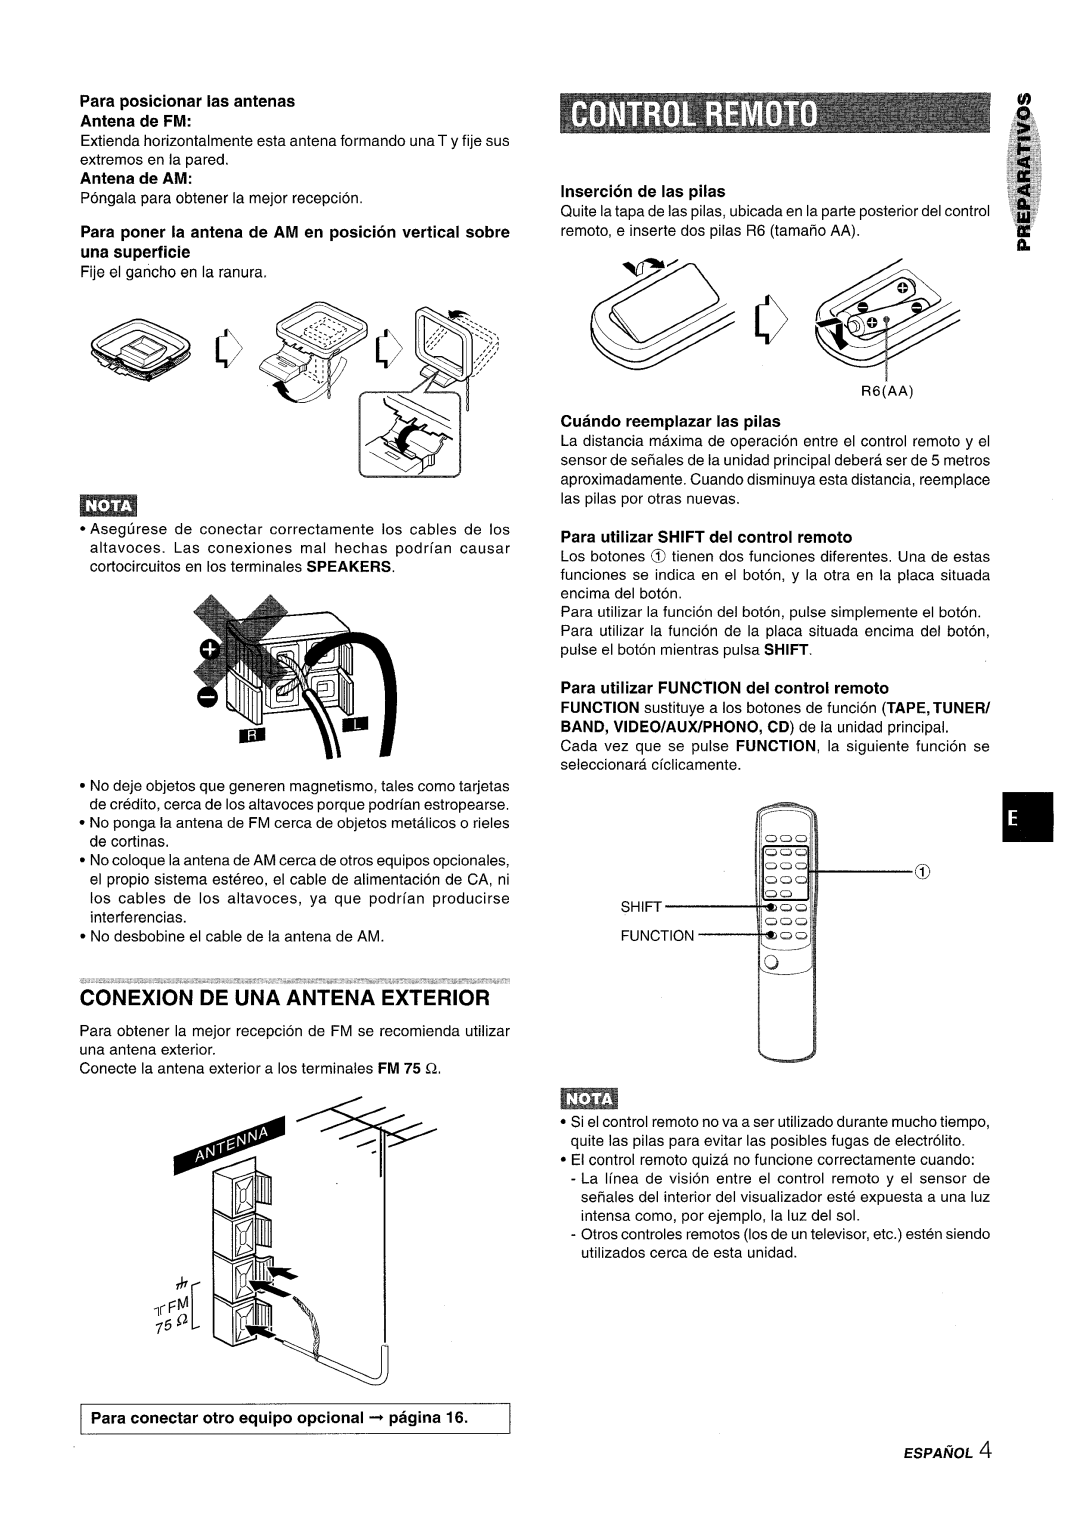 Aiwa Z-R555 manual Para posicionar Ias antenas Antena de FM, Insertion de Ias pilas, Cuando reemplazar Ias pilas 